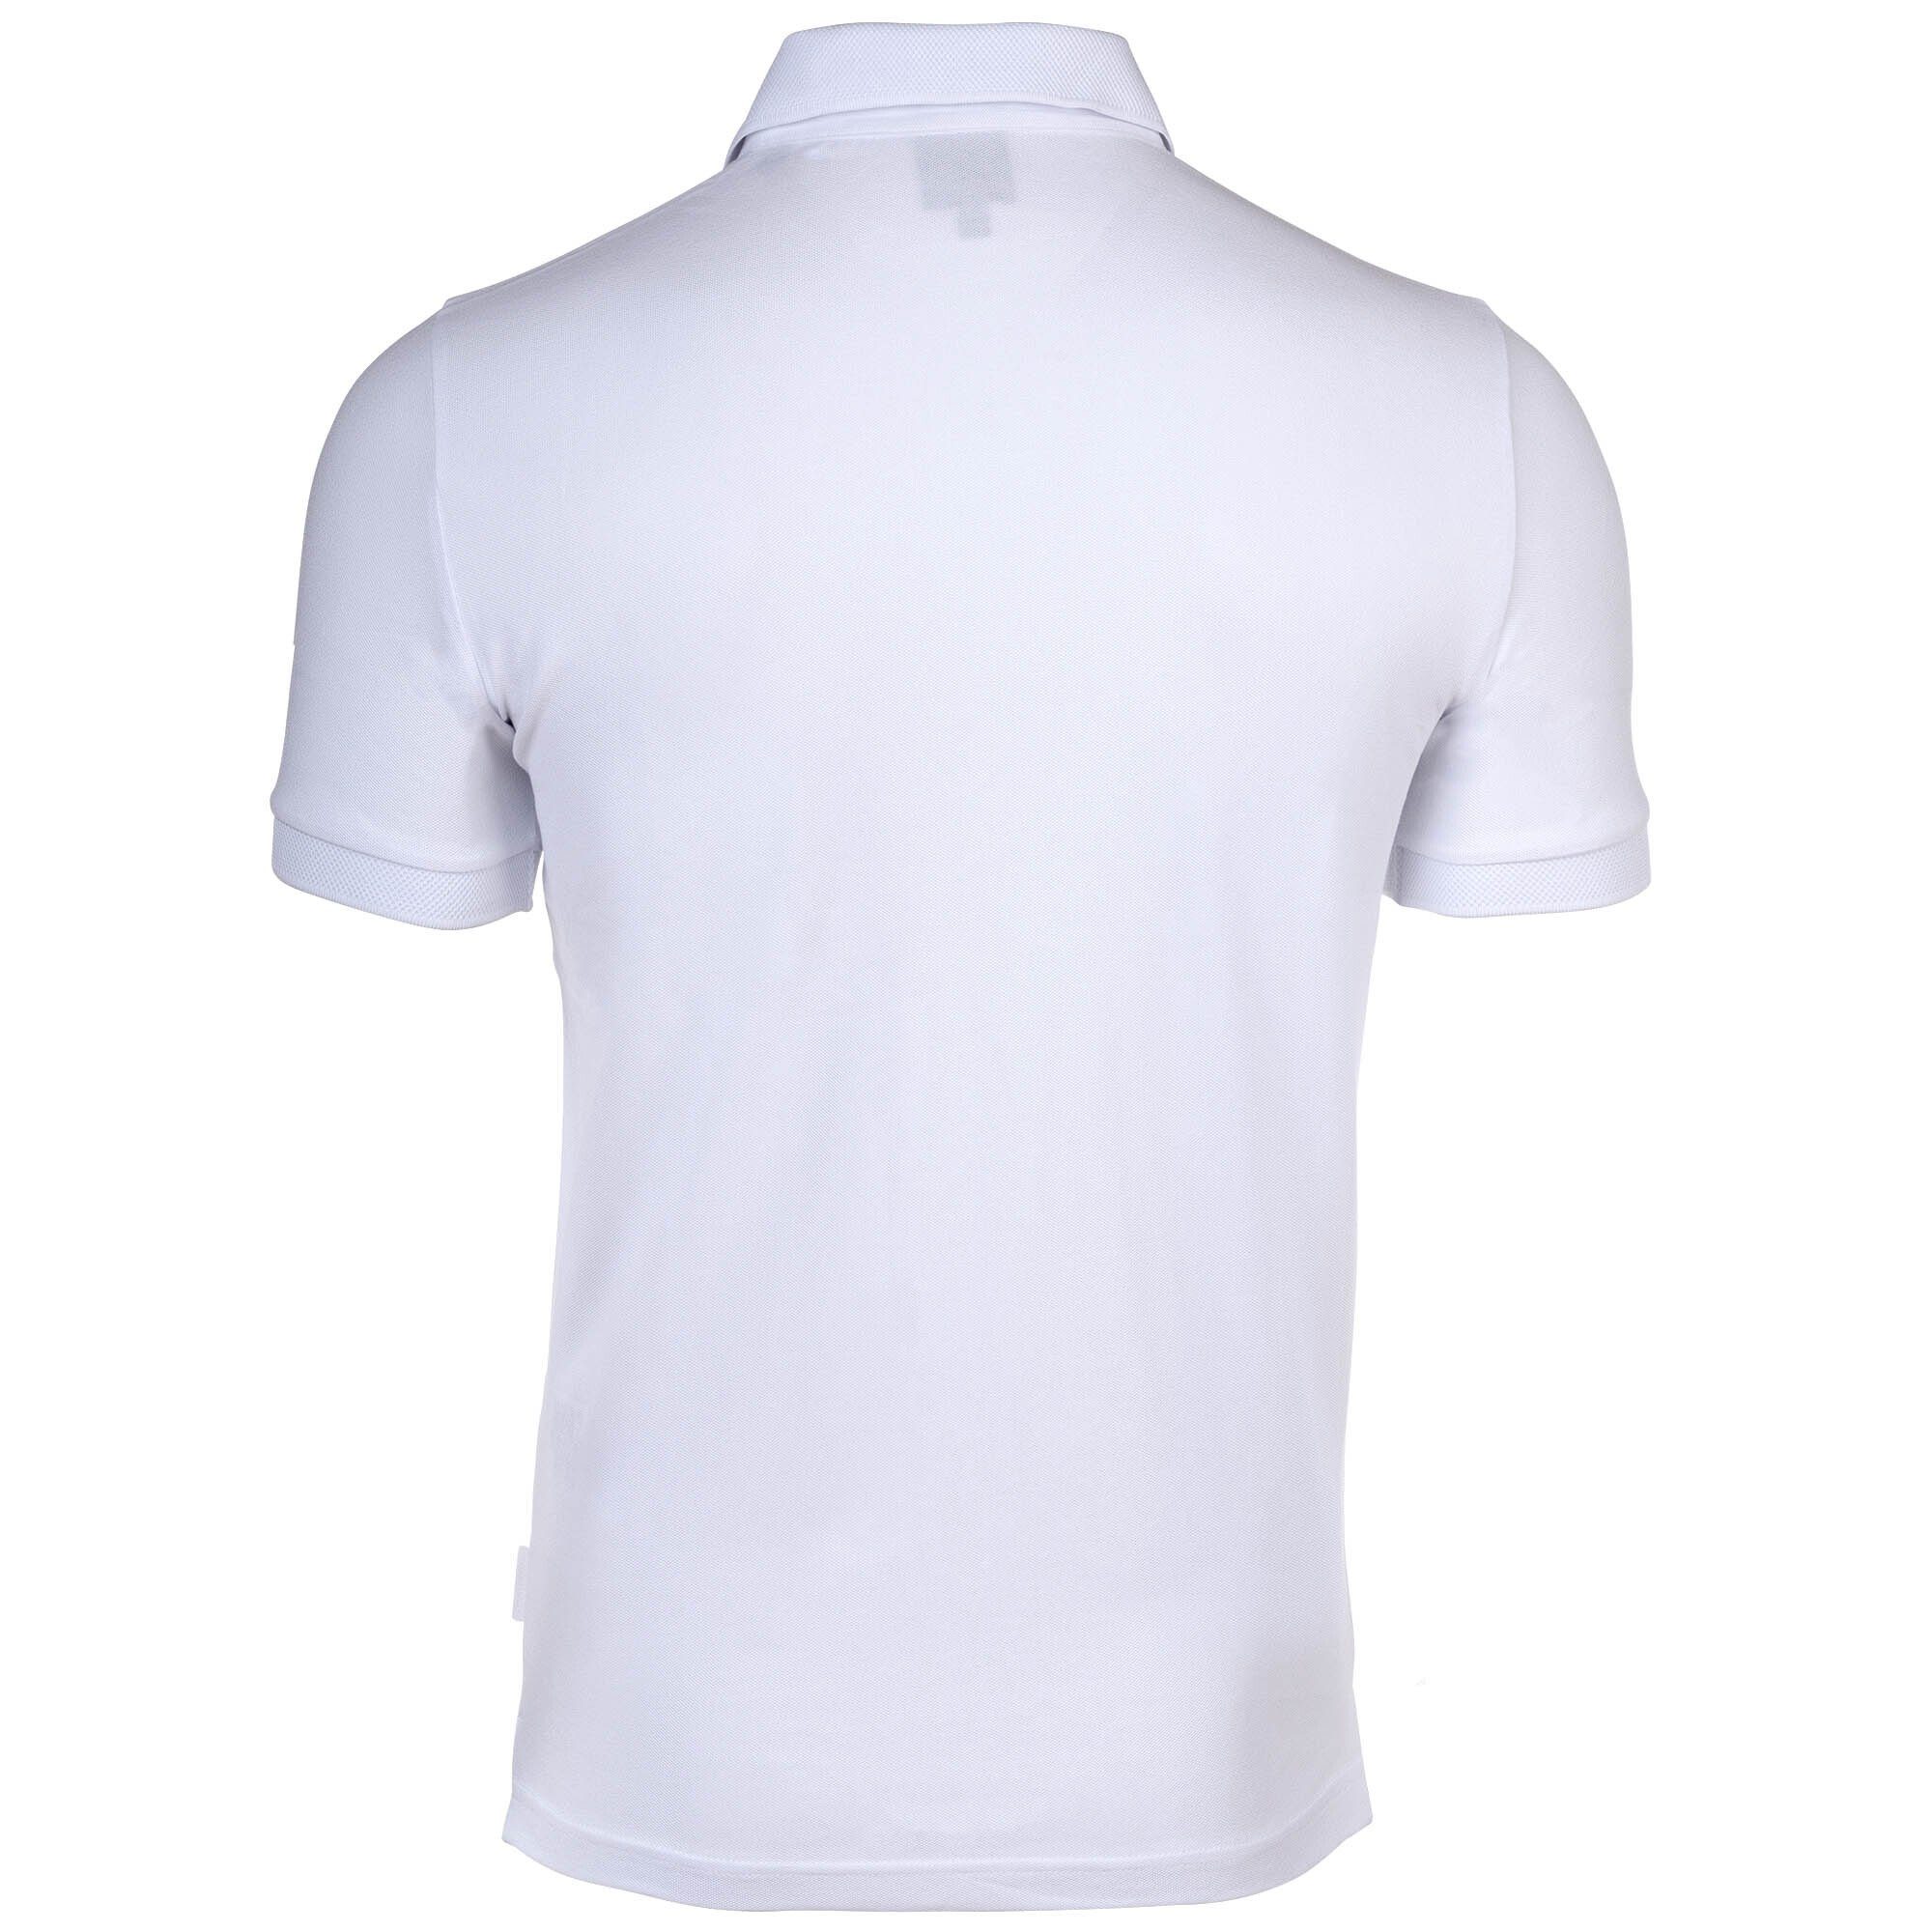 ARMANI EXCHANGE Poloshirt Weiß fit, Herren - Slim Cotton Poloshirt einfarbig